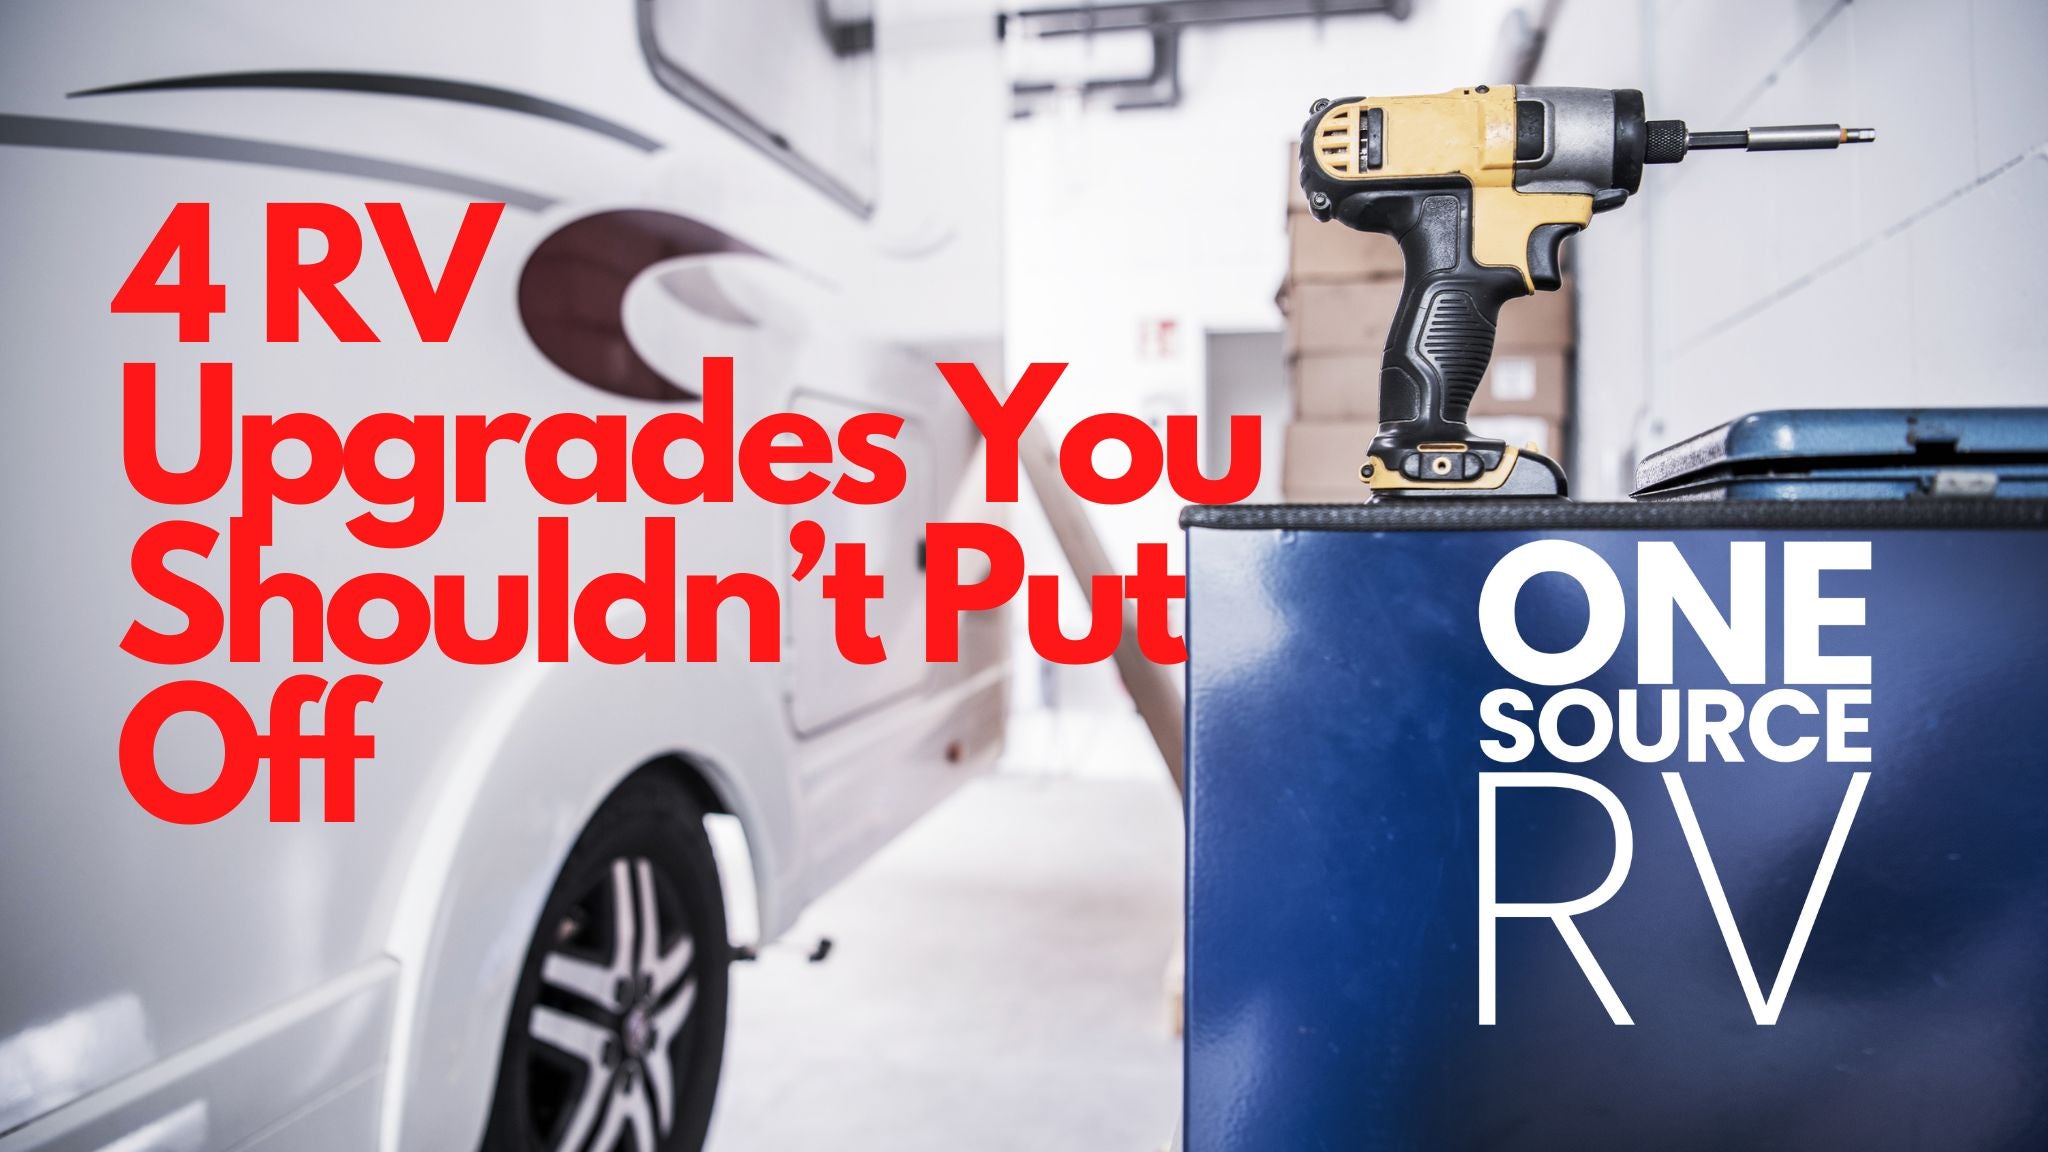 4 RV Upgrades You Shouldn’t Put Off